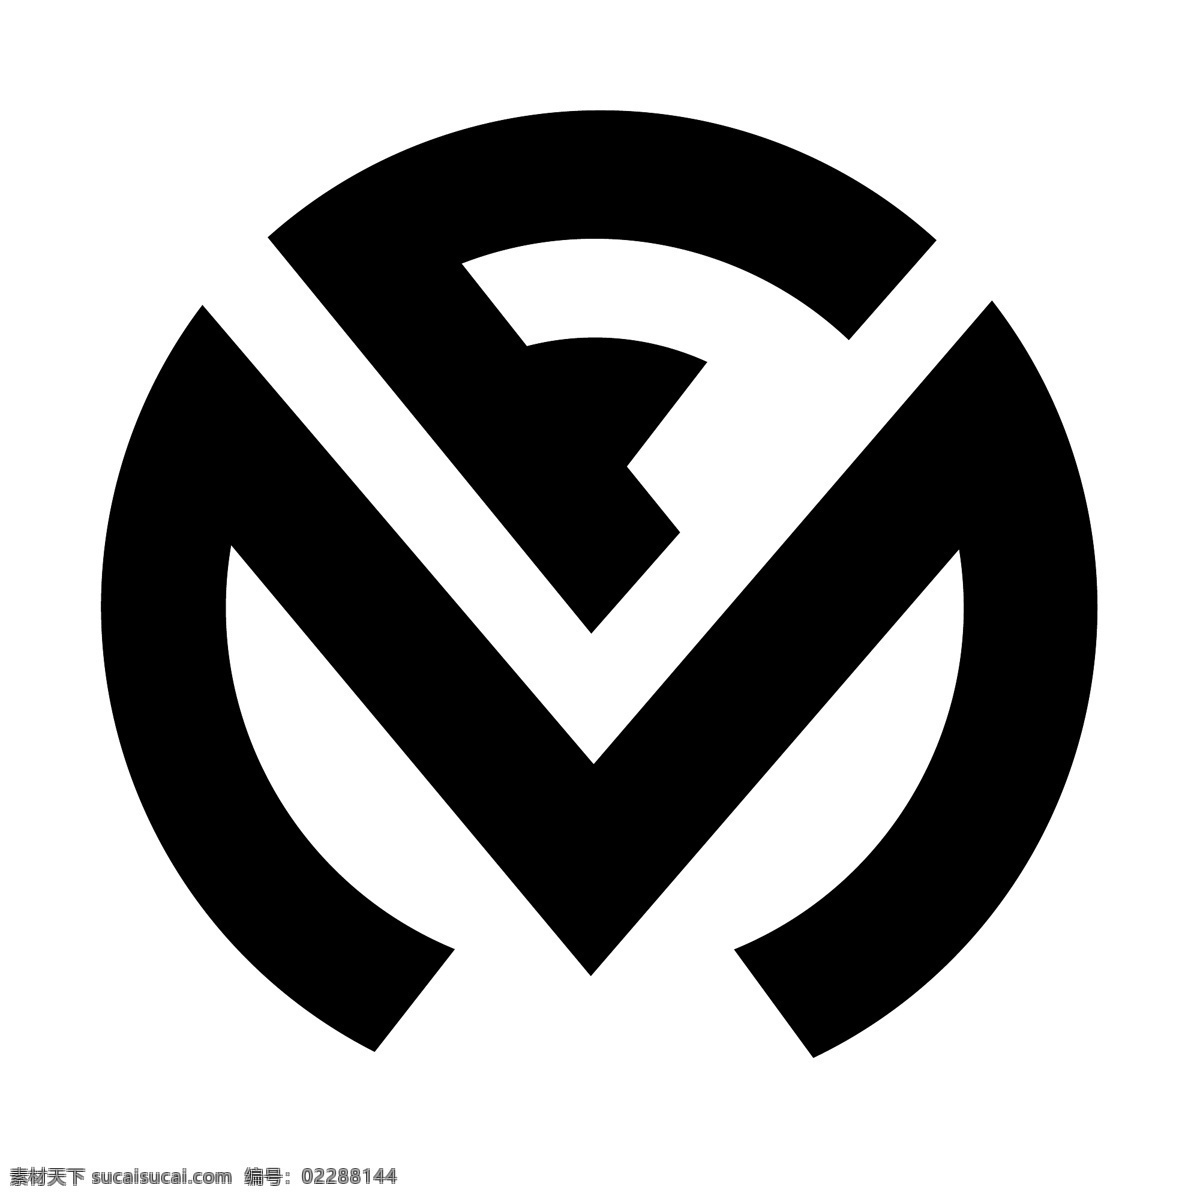 弗兰克 穆勒 手表 米勒 法兰克 法兰克穆勒 米勒日内瓦 日内瓦 矢量 标志 logo 矢量图 建筑家居